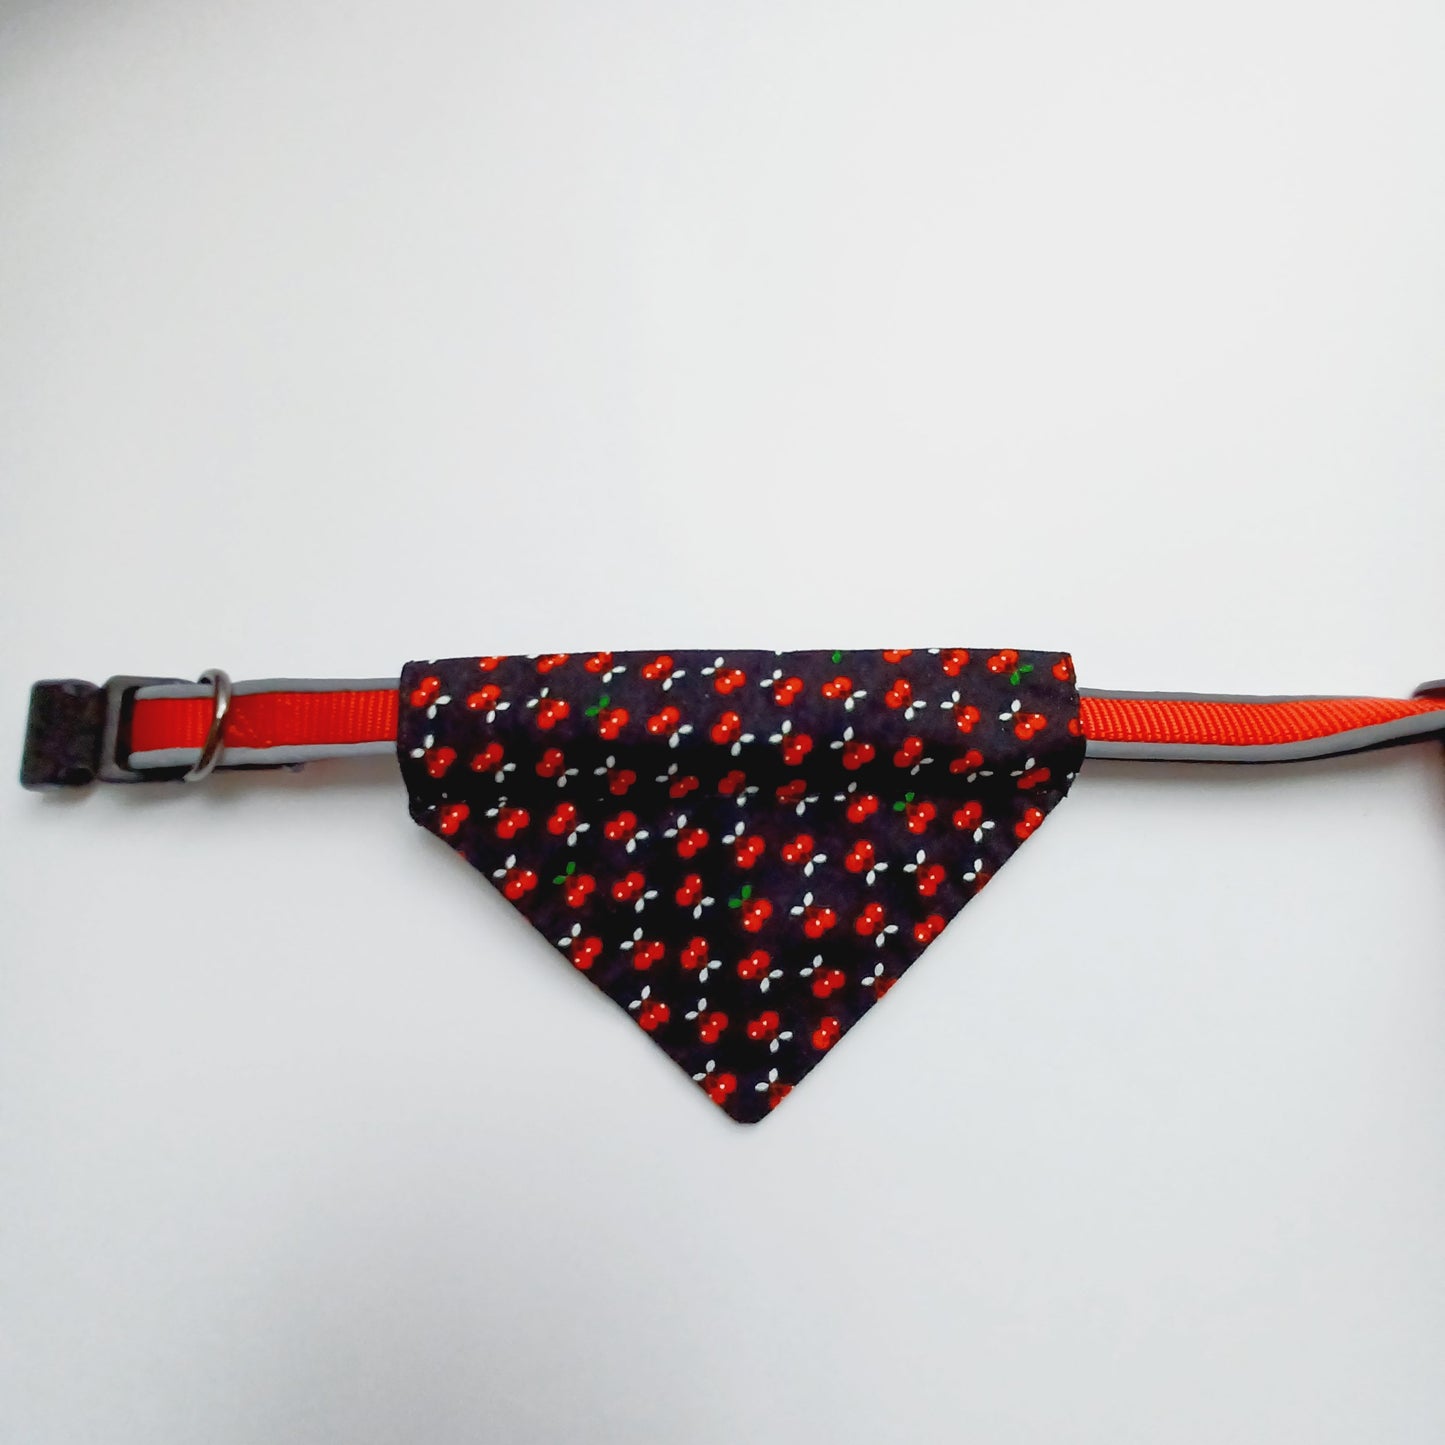 Modèle B-Chat et chien-Foulard par-dessus le collier-Noir avec cerises/Bandana over the collar-Black with cherry